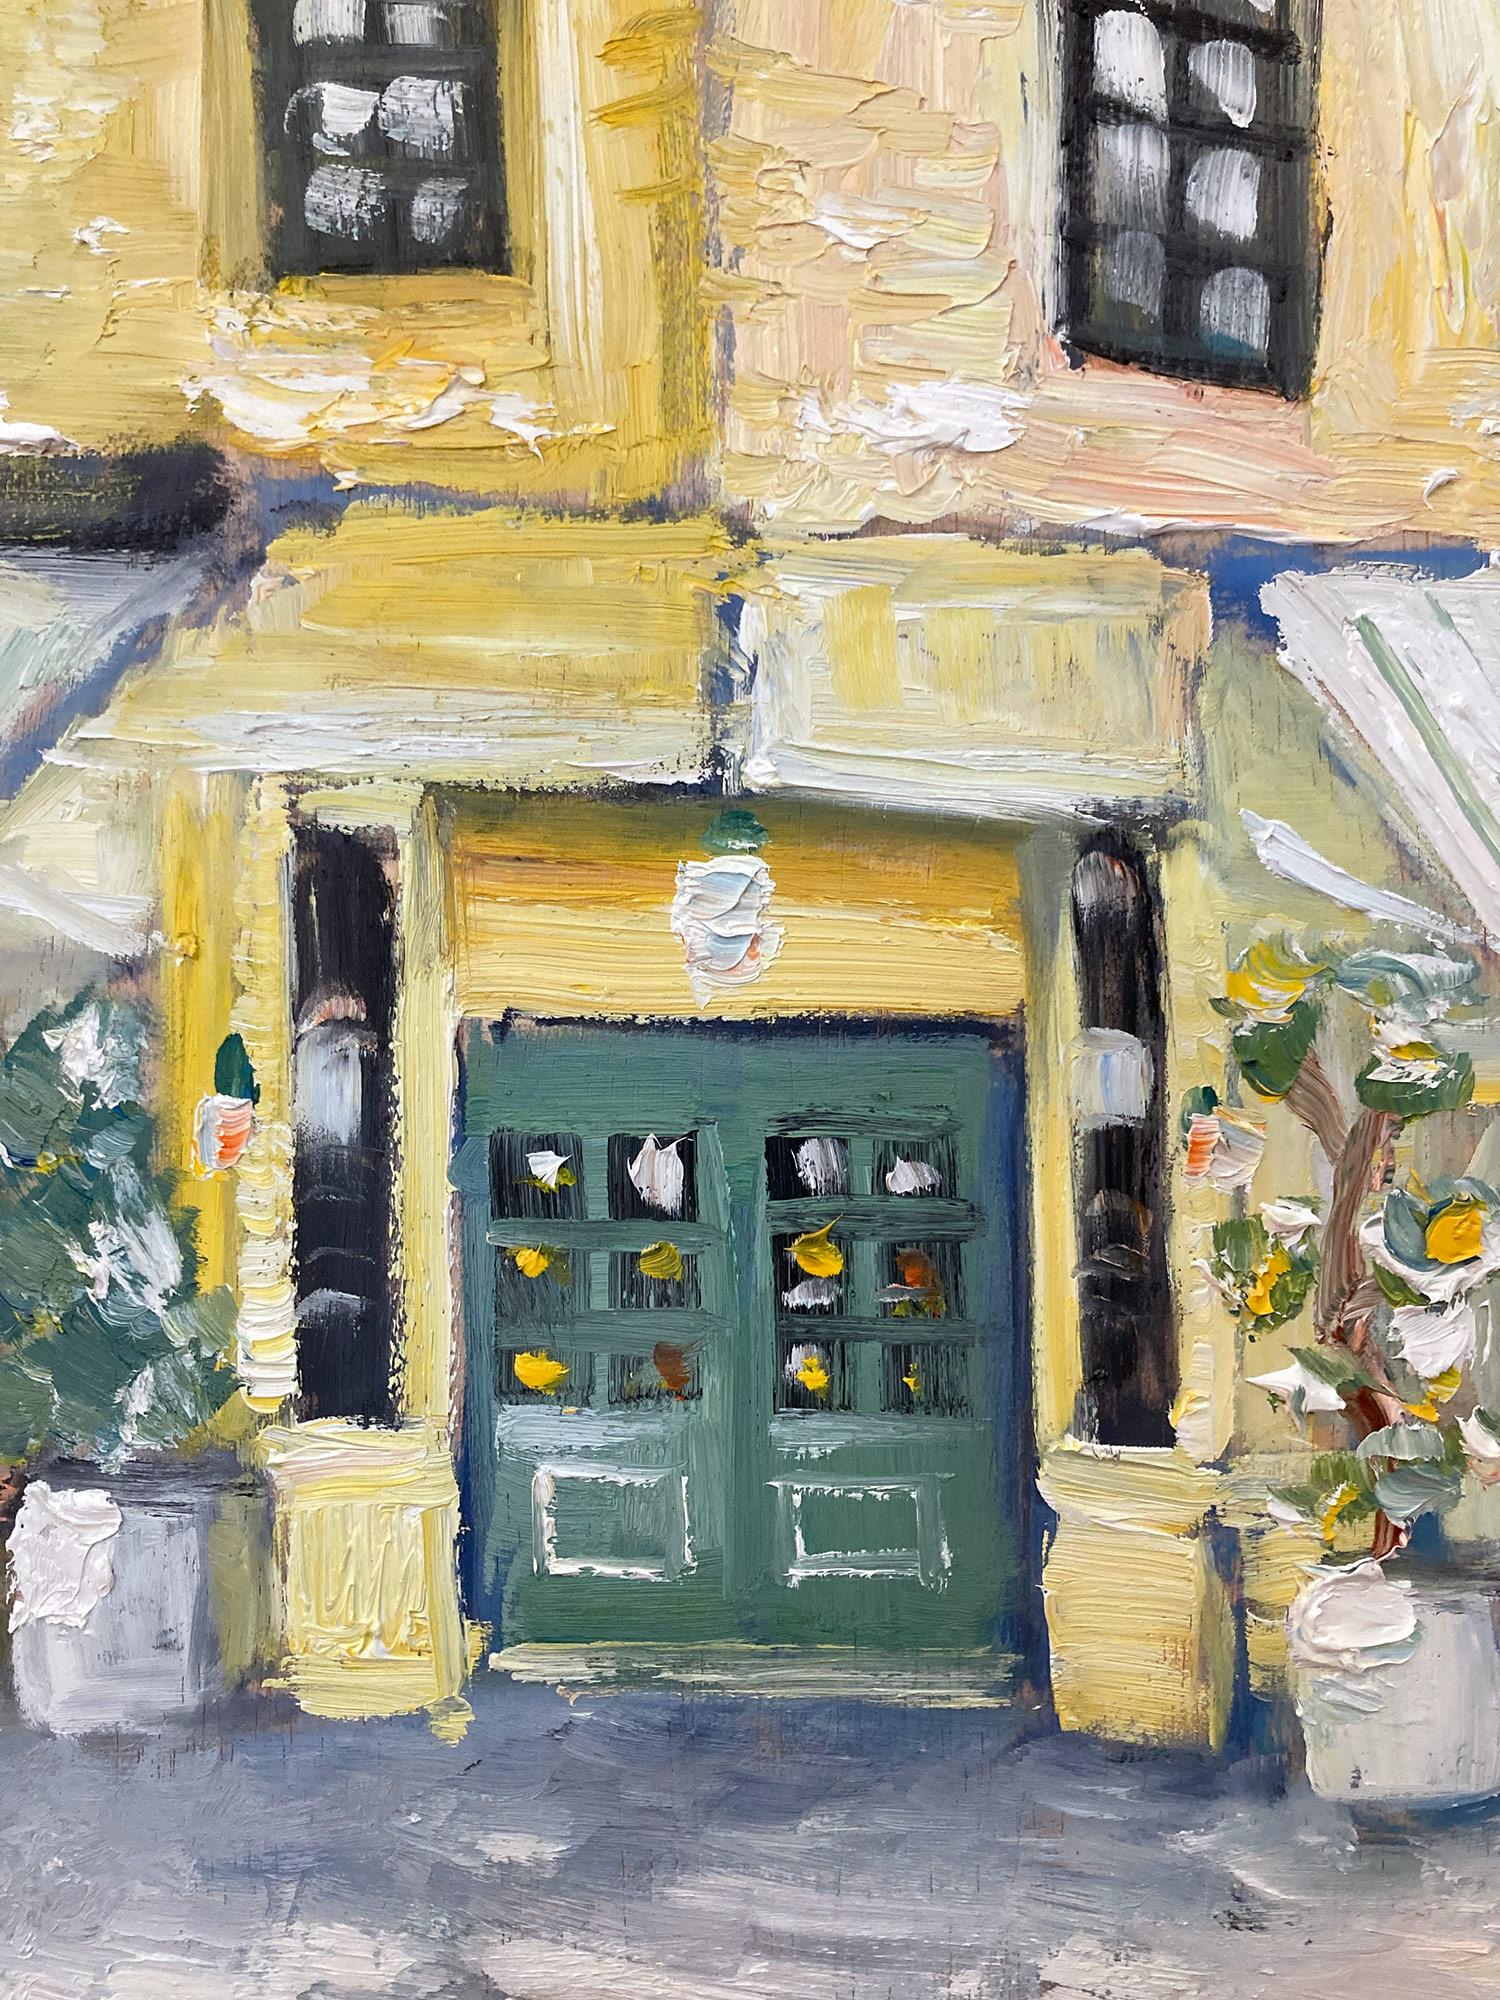 Impressionistisches Ölgemälde des West Village Restaurant „Brunch at Cafe Cluny“ (Amerikanischer Impressionismus), Painting, von Cindy Shaoul